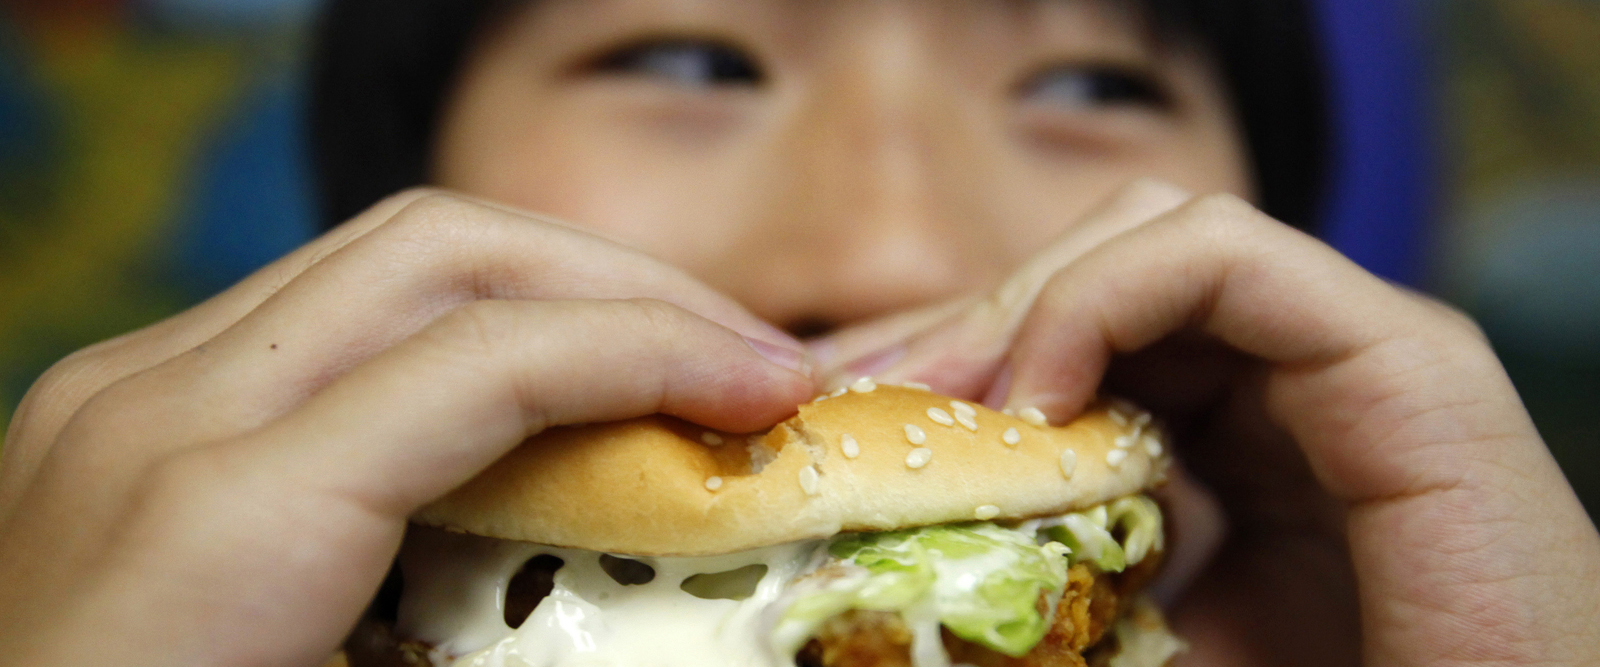 El polémico vídeo que muestra la cara de McDonald's que nadie quiere ver